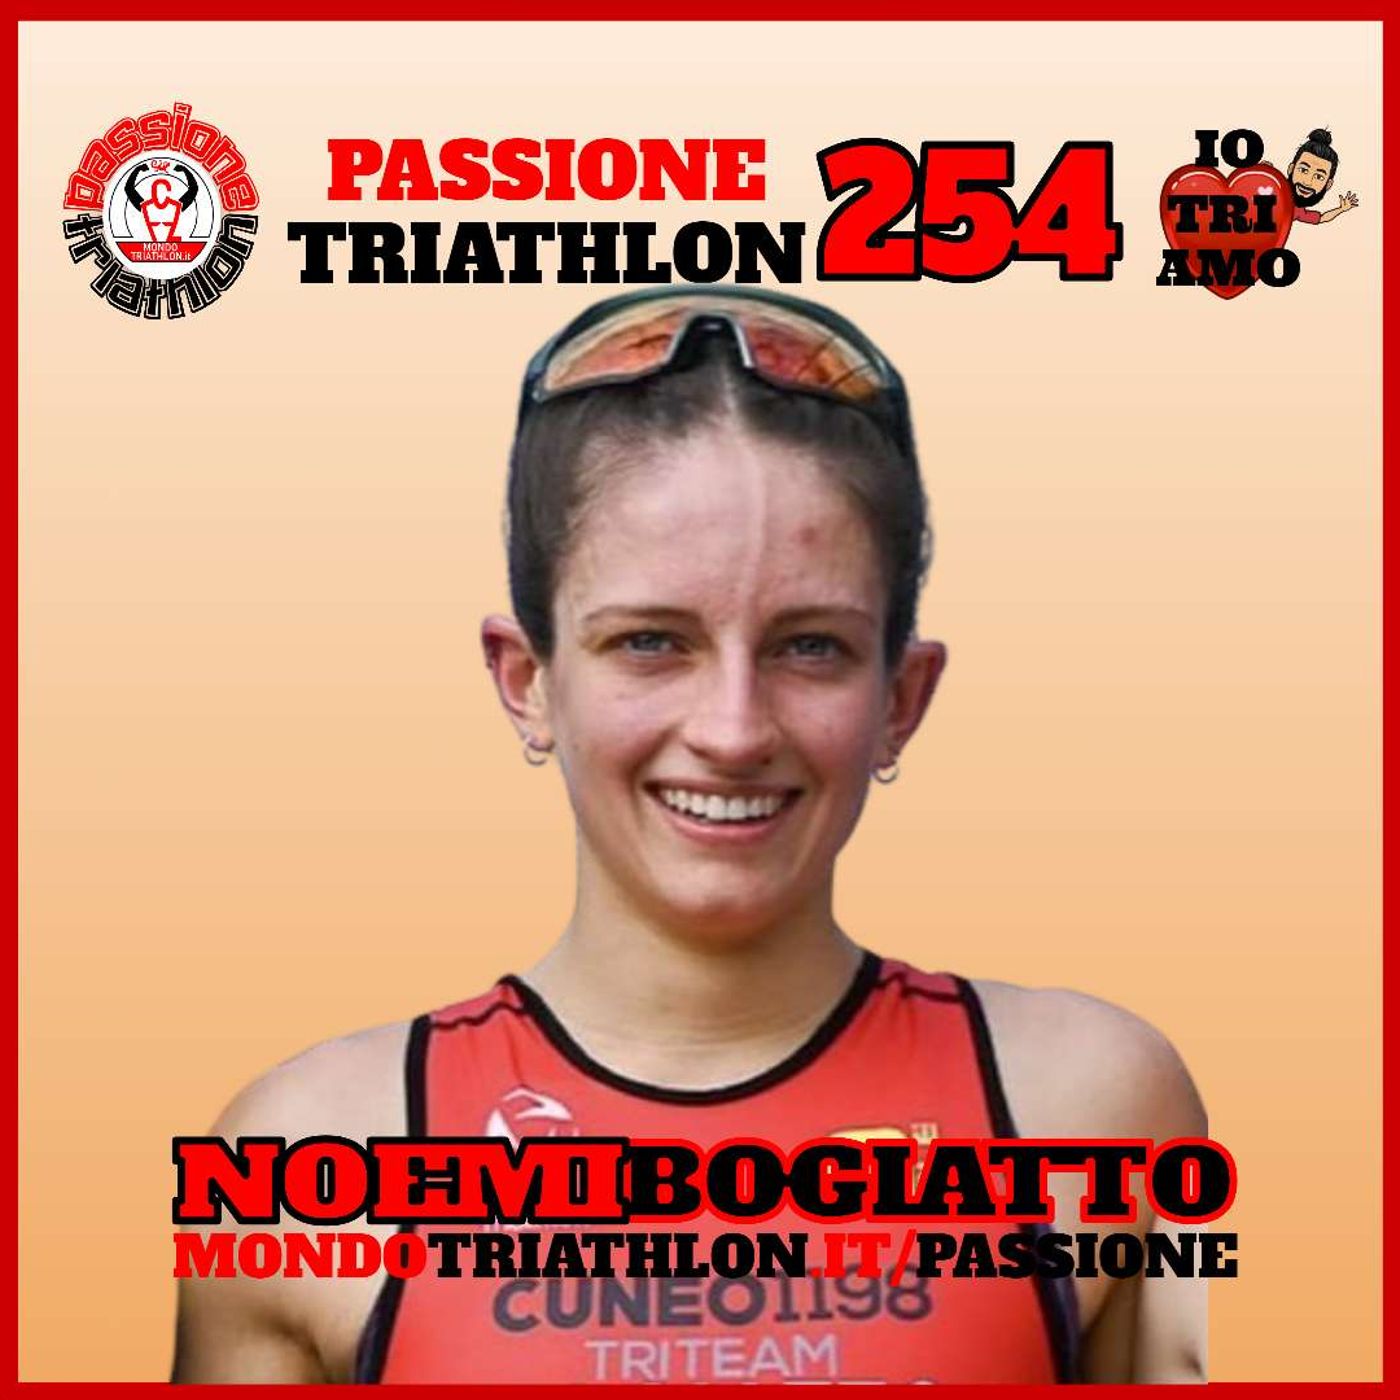 Passione Triathlon n° 254 🏊🚴🏃💗 Noemi Bogiatto